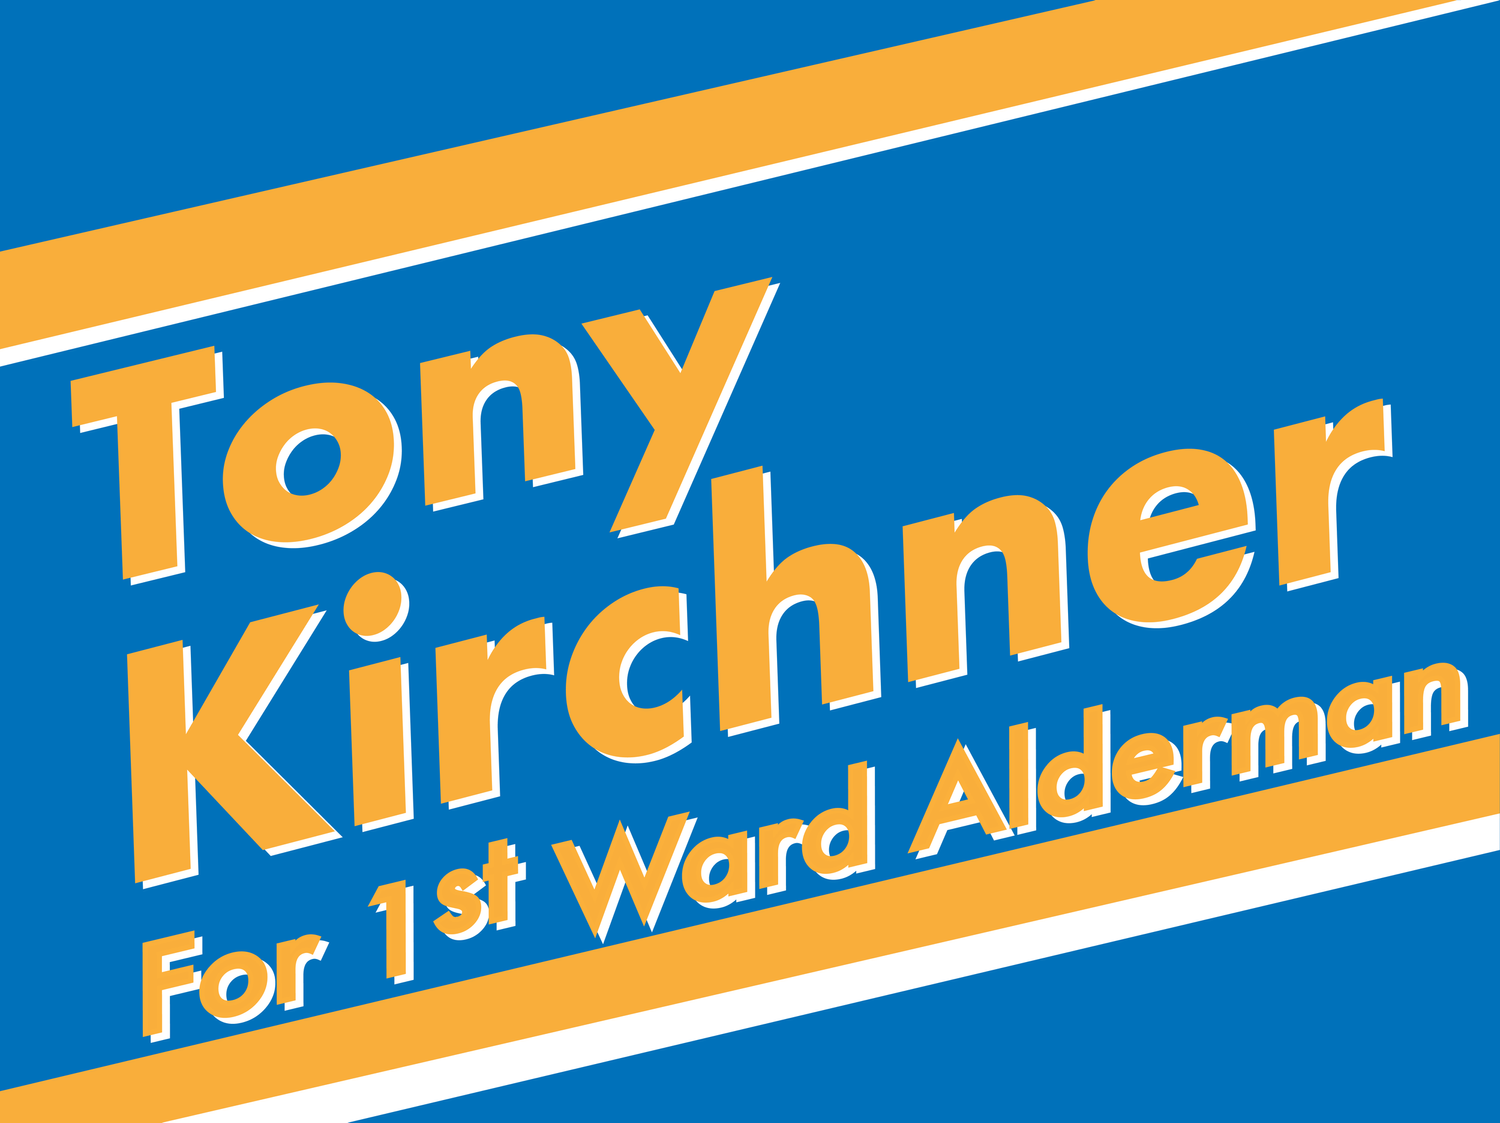 Tony Kirchner for Alderman